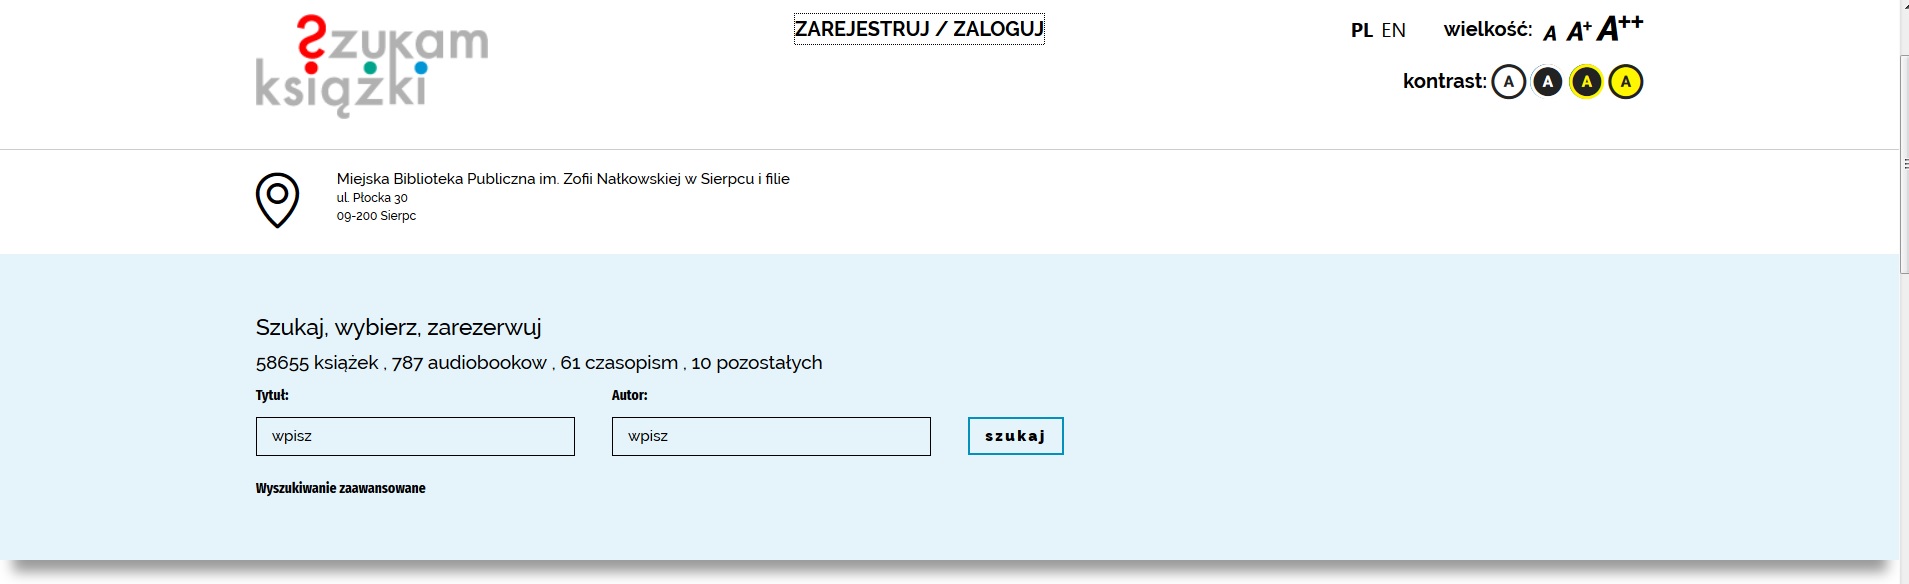 Strona szukamksiążki.pl zapewniająca dostęp do katalogu miejskiej Biblioteki Publicznej w Sierpcu. U góry podświetlony napis "Zarejestruj/zaloguj".